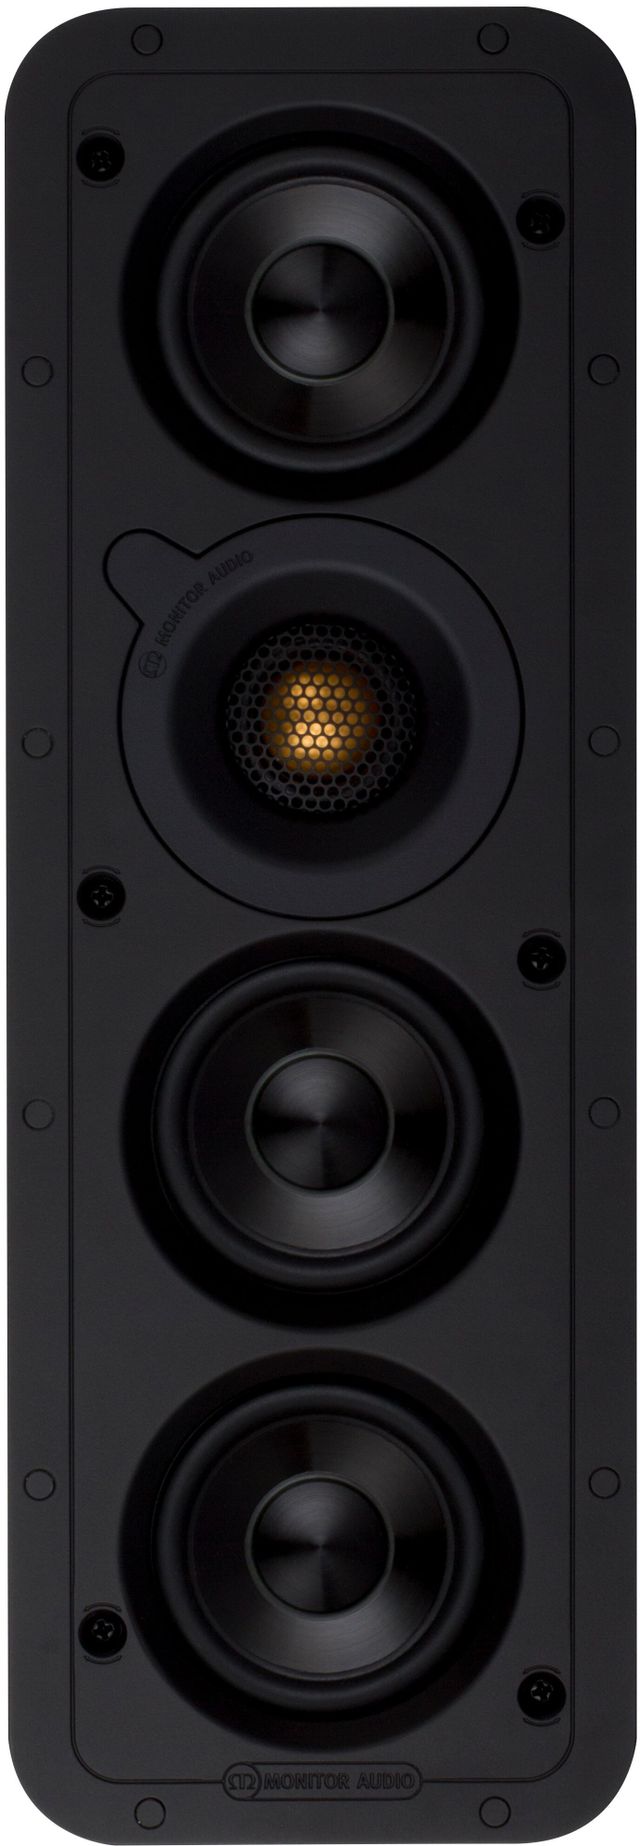 Monitor Audio WSS130 In-Wall Speaker